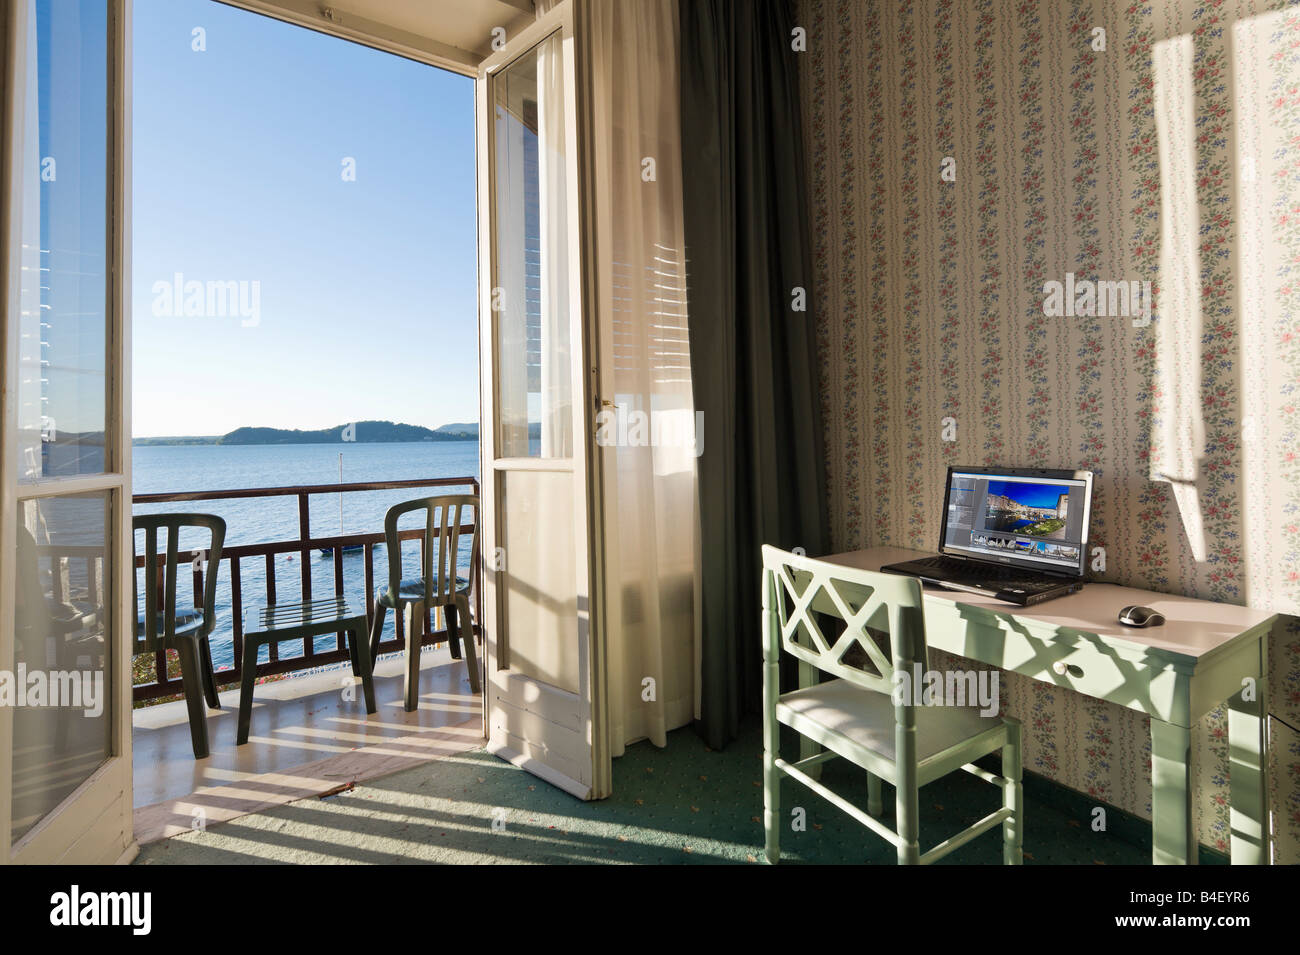 Il computer portatile su una scrivania in un hotel fronte lago e camera, Belgirate, Lago Maggiore, Italia Foto Stock